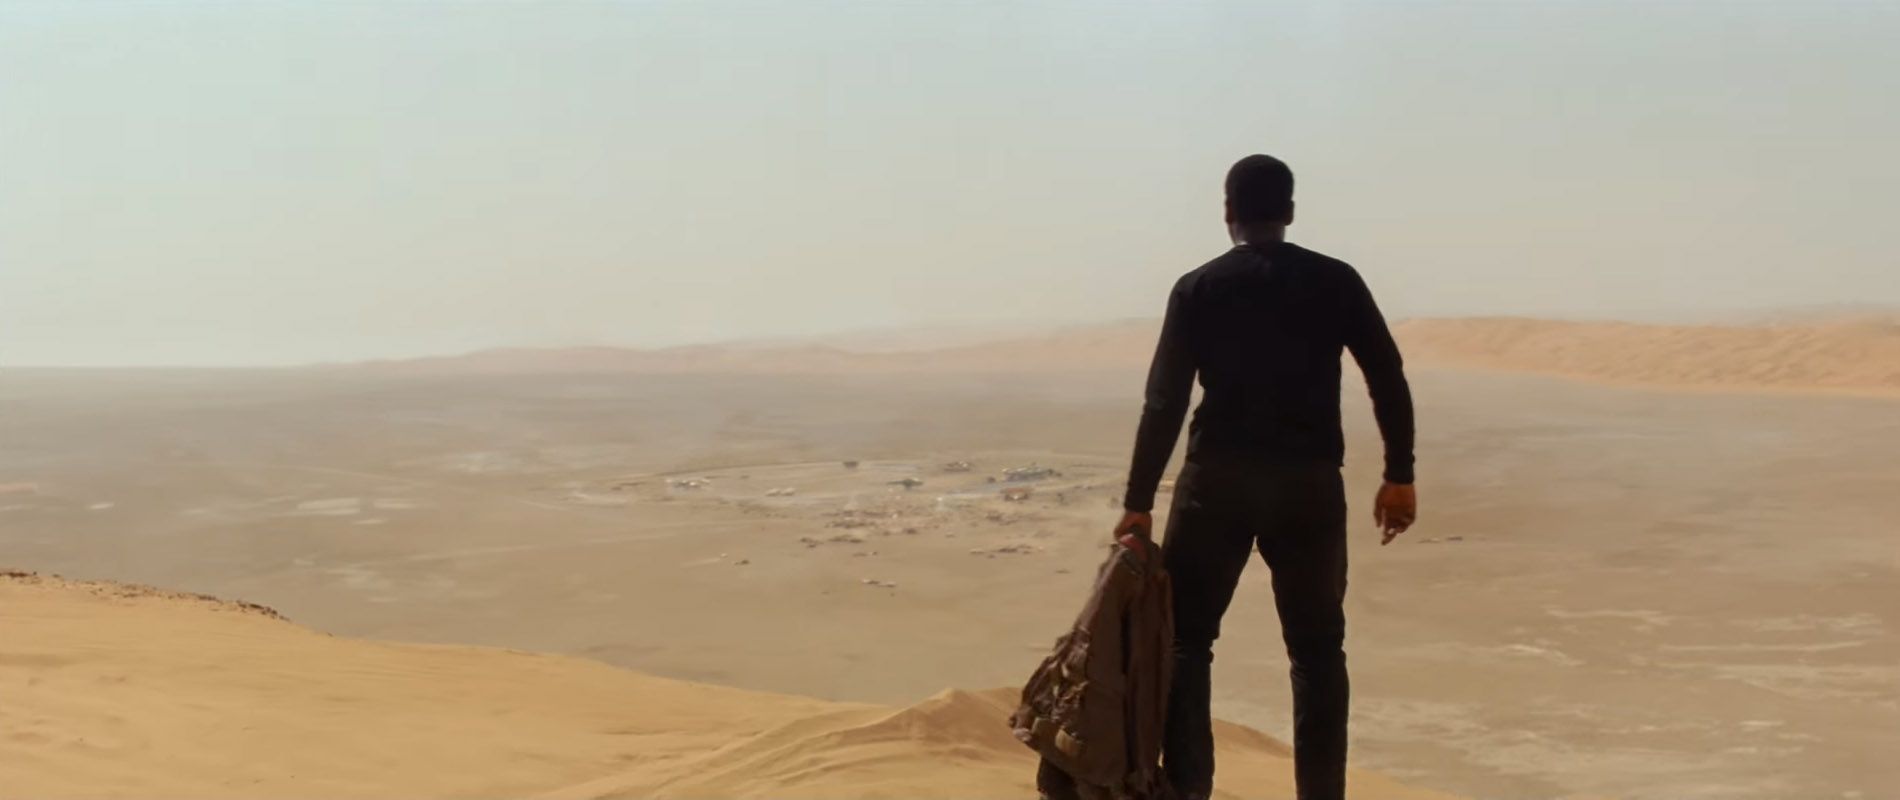 Star Wars 7 Trailer #3 - Finn finds Jakku Settlement